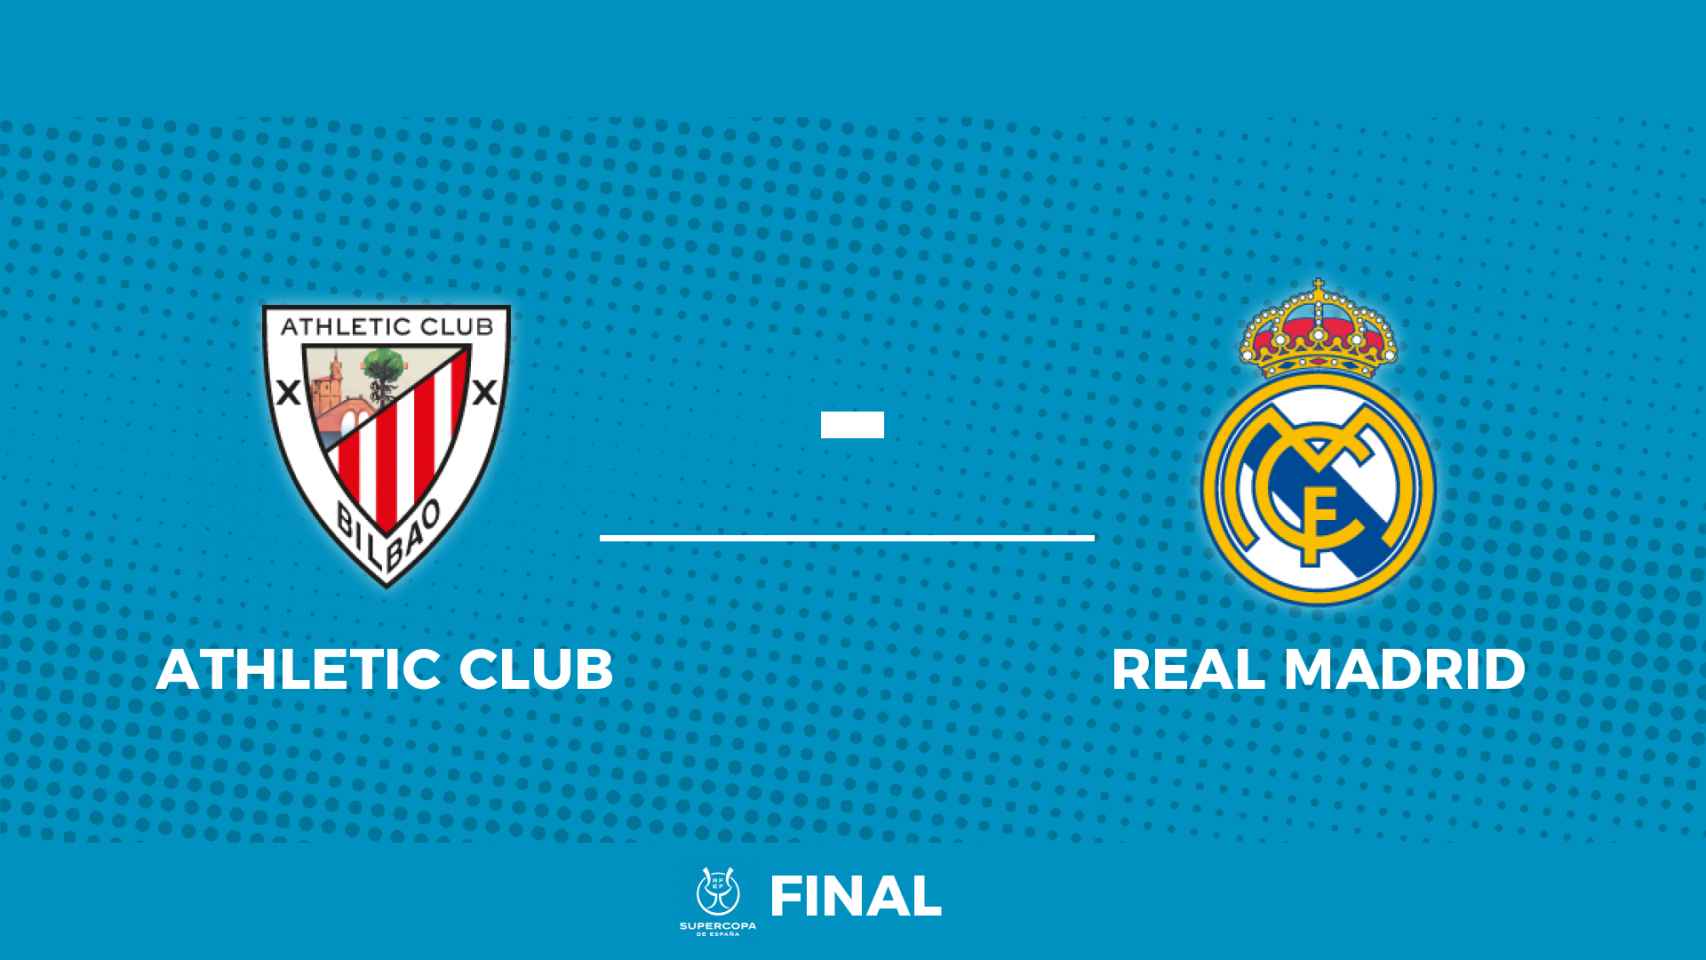 Cartel de la final de la Supercopa de España 2022 entre Athletic Club y Real Madrid